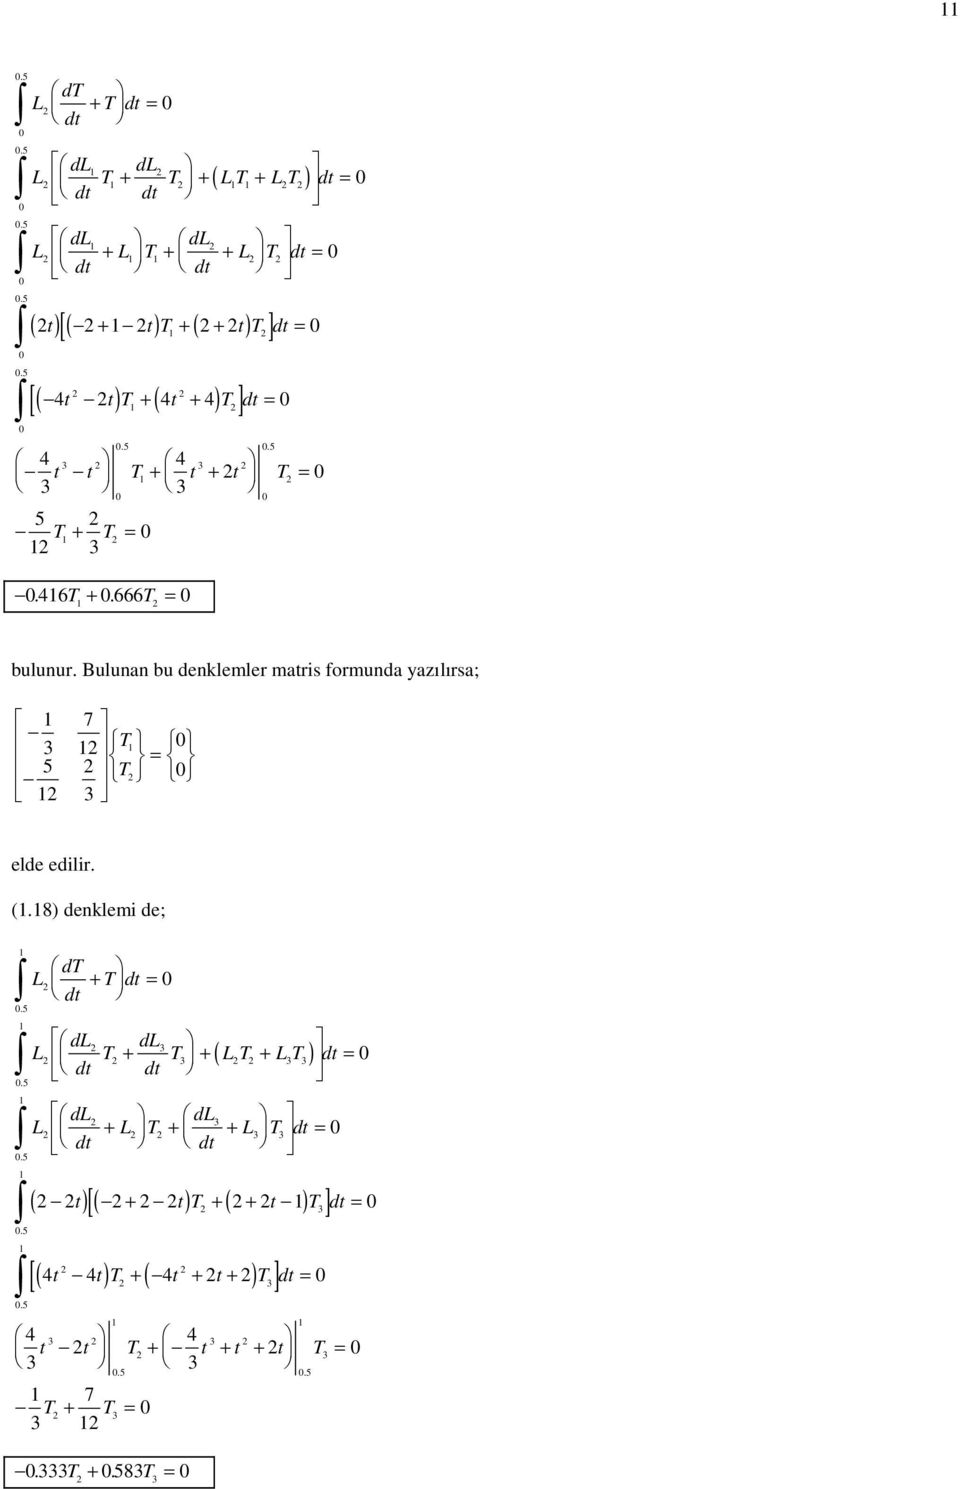 Bulunan bu denklemler matris formunda yazılırsa; 3 5 